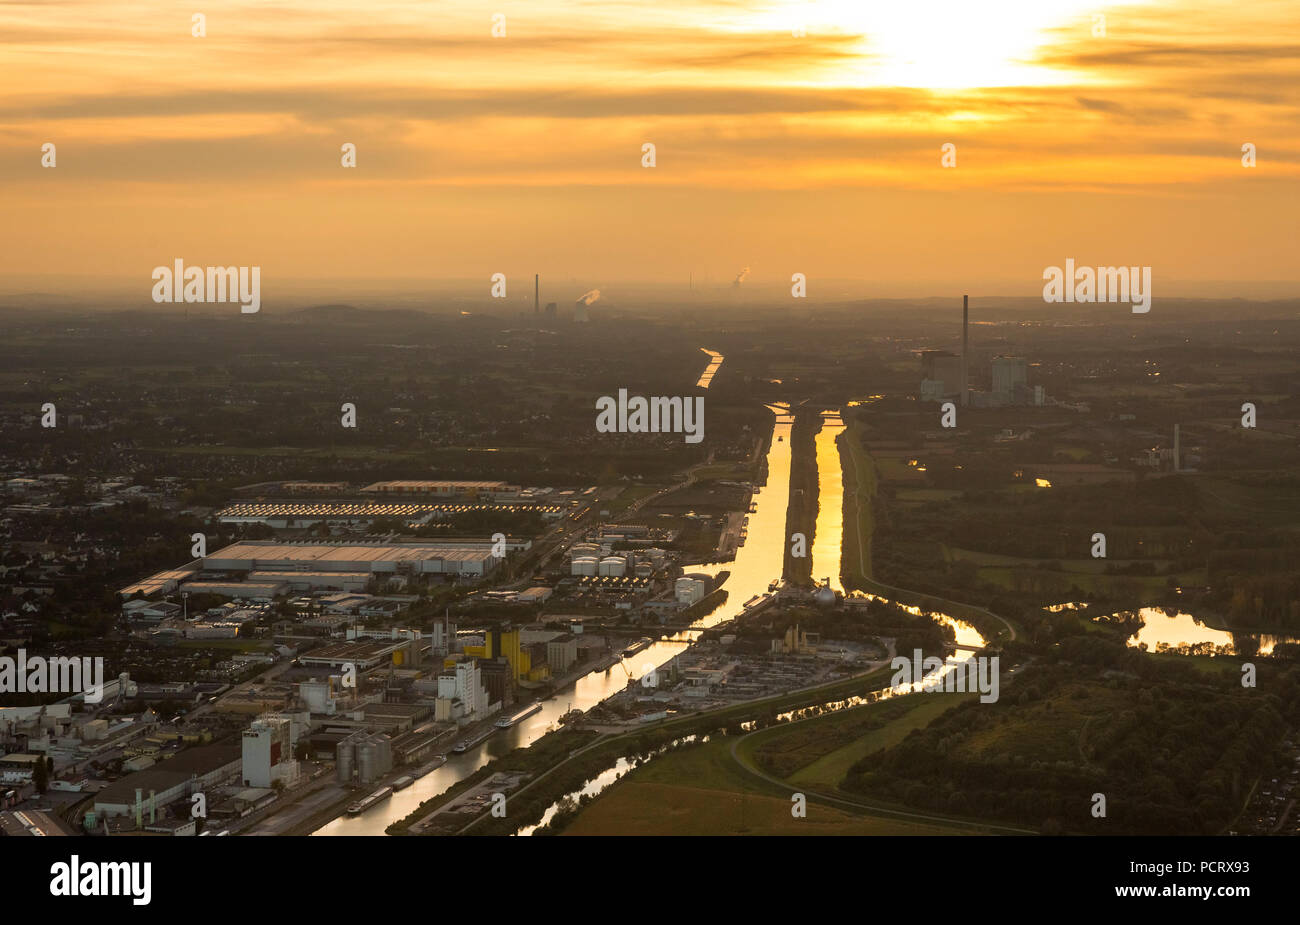 Hamm Hafen, Hafen Hamm, Golden Sunset mit reflektierenden Datteln-Hamm-Kanal und Lippe, Hamm, Ruhrgebiet, Nordrhein-Westfalen, Deutschland Stockfoto